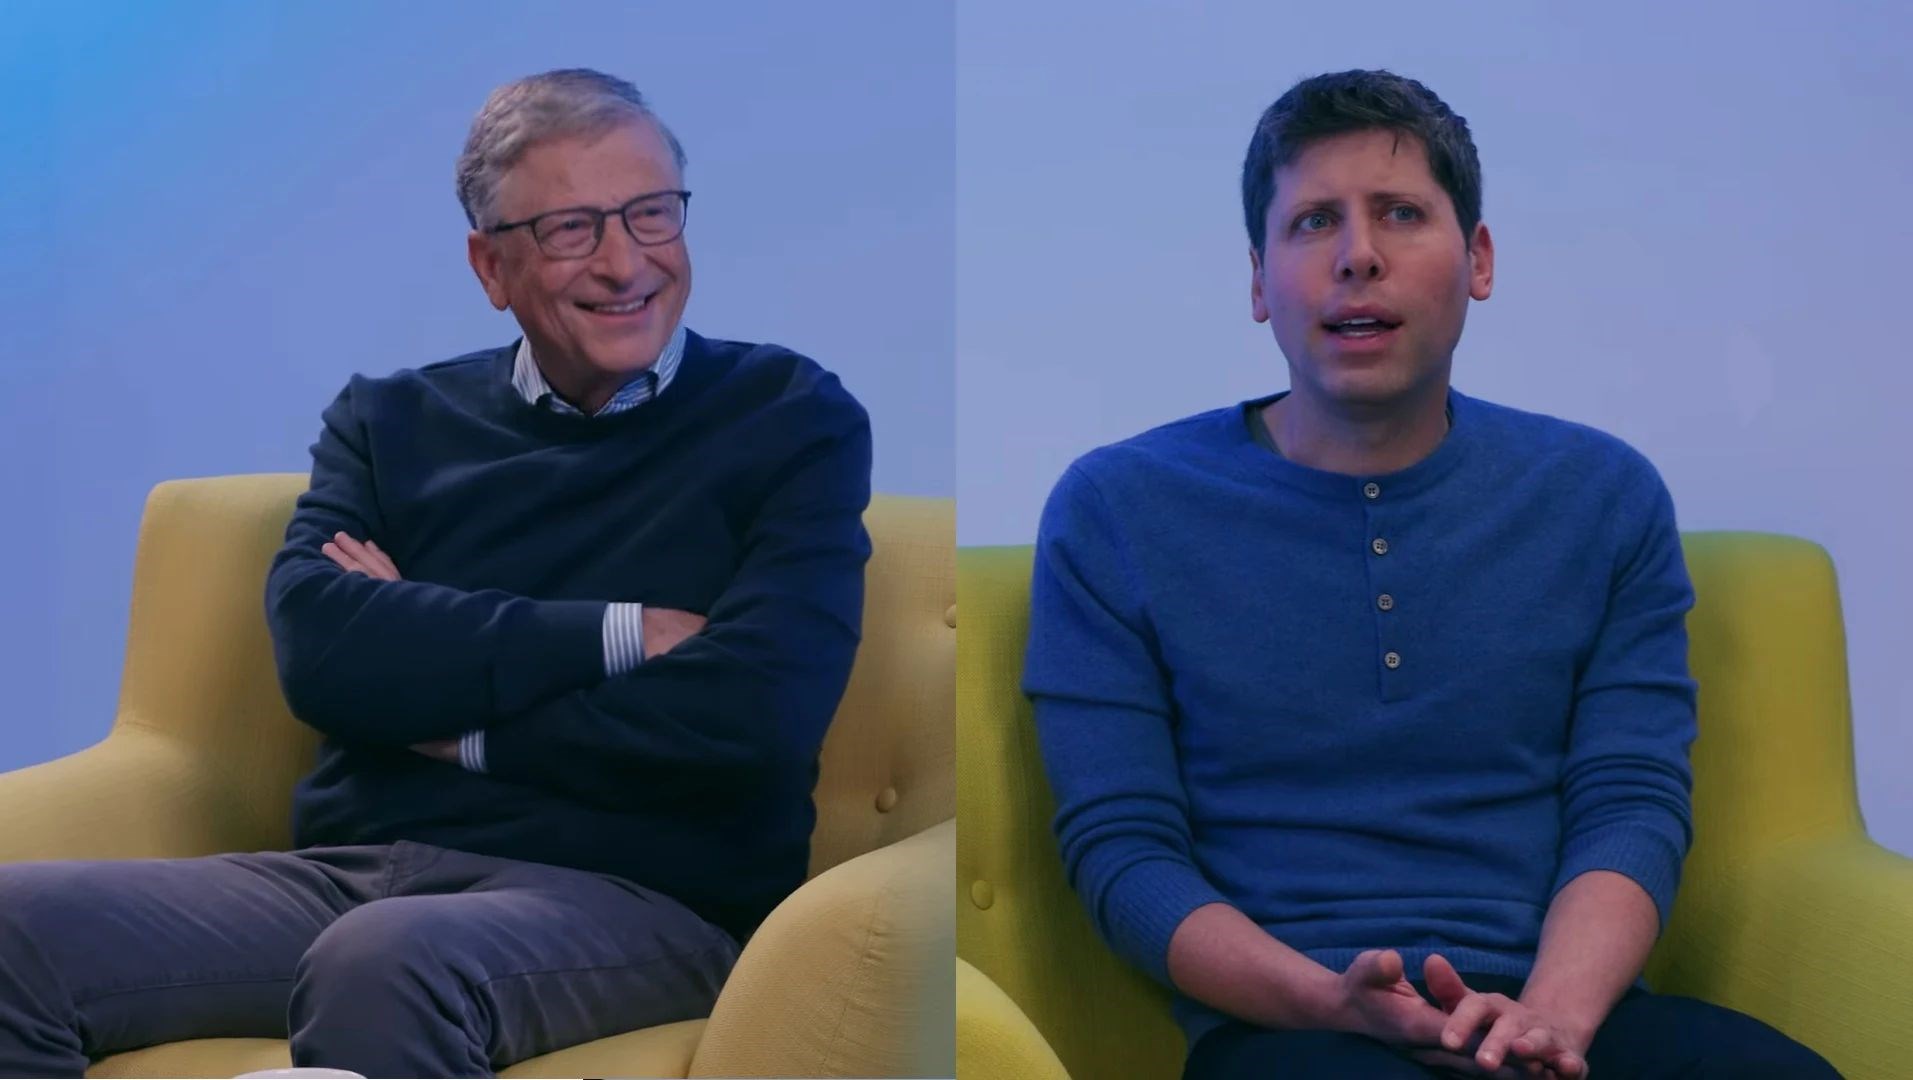 Bill Gates, Microsoft'u şirkette bir pozisyonu olmadan yönetiyor